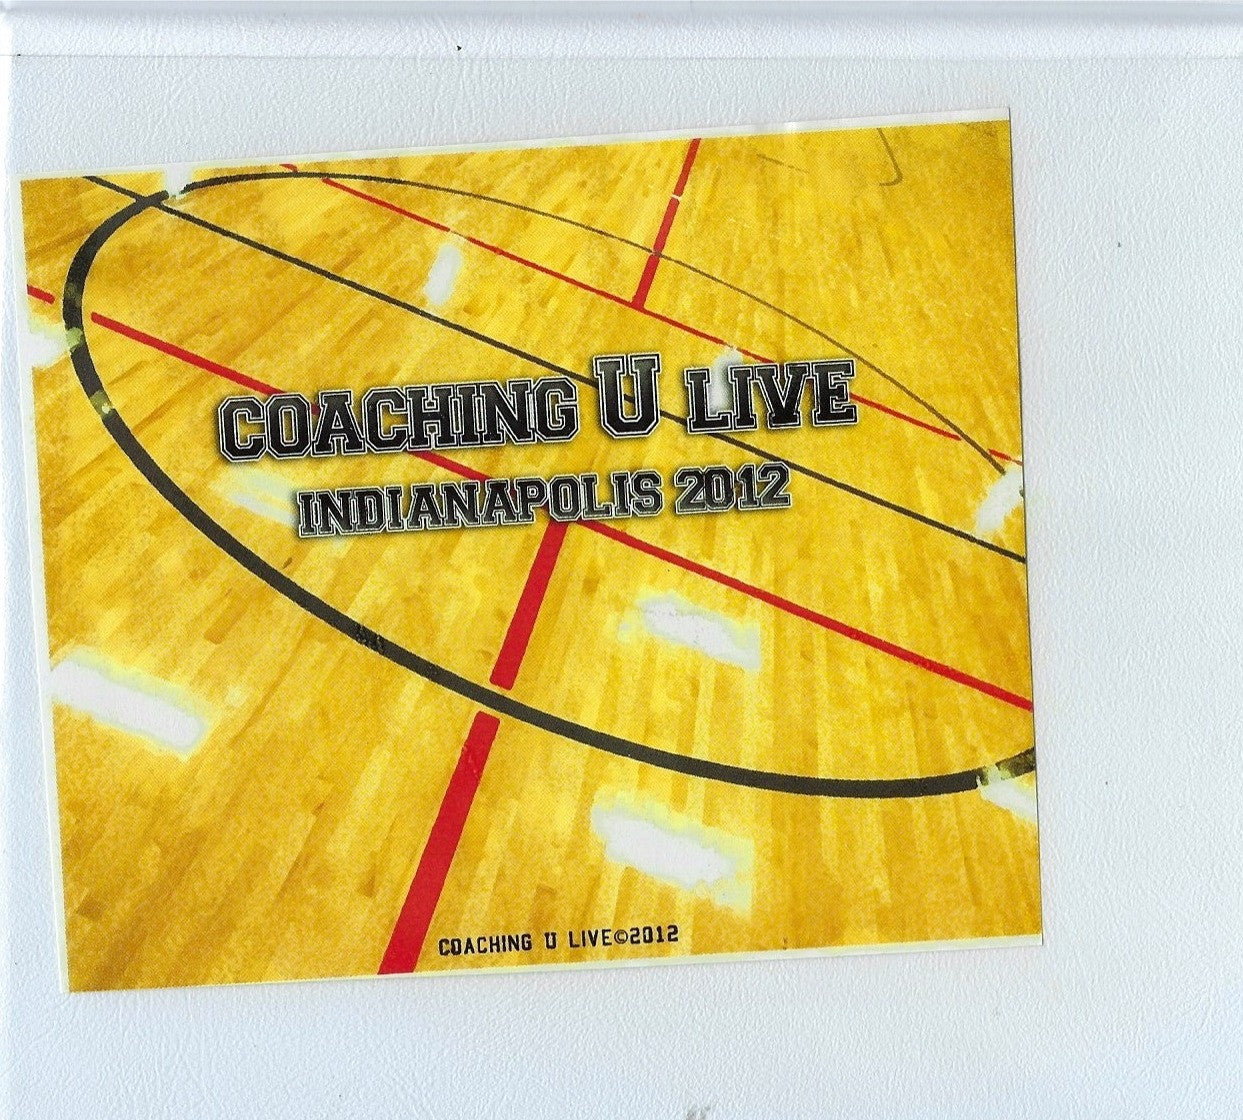 Coaching U Live Indianapolis 2012 11 Dvd Set by Coaching U Live Instructional Basketball Coaching Video